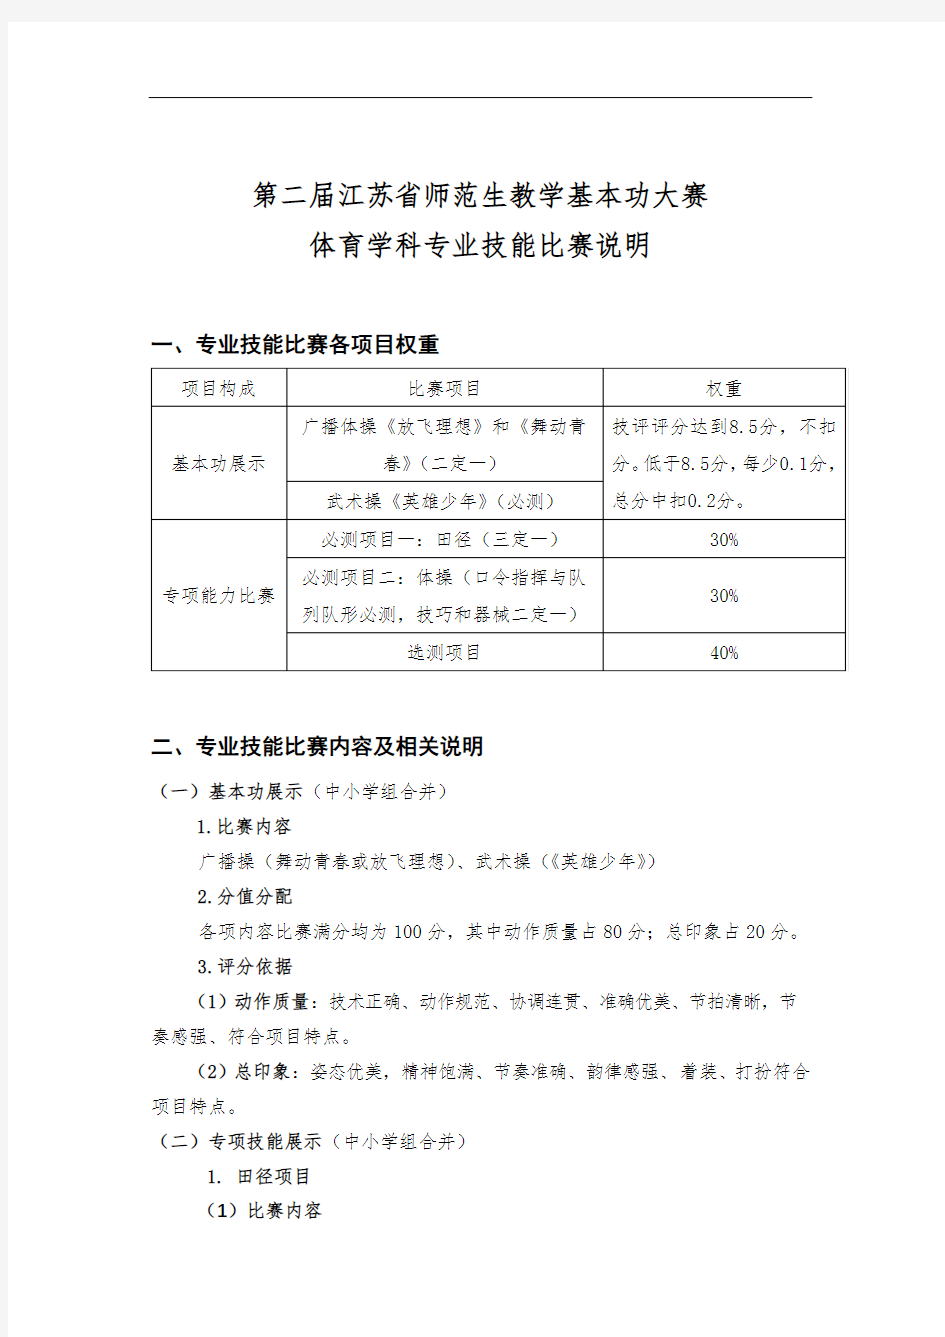 第二届江苏省师范生教学基本功大赛实施方案【模板】